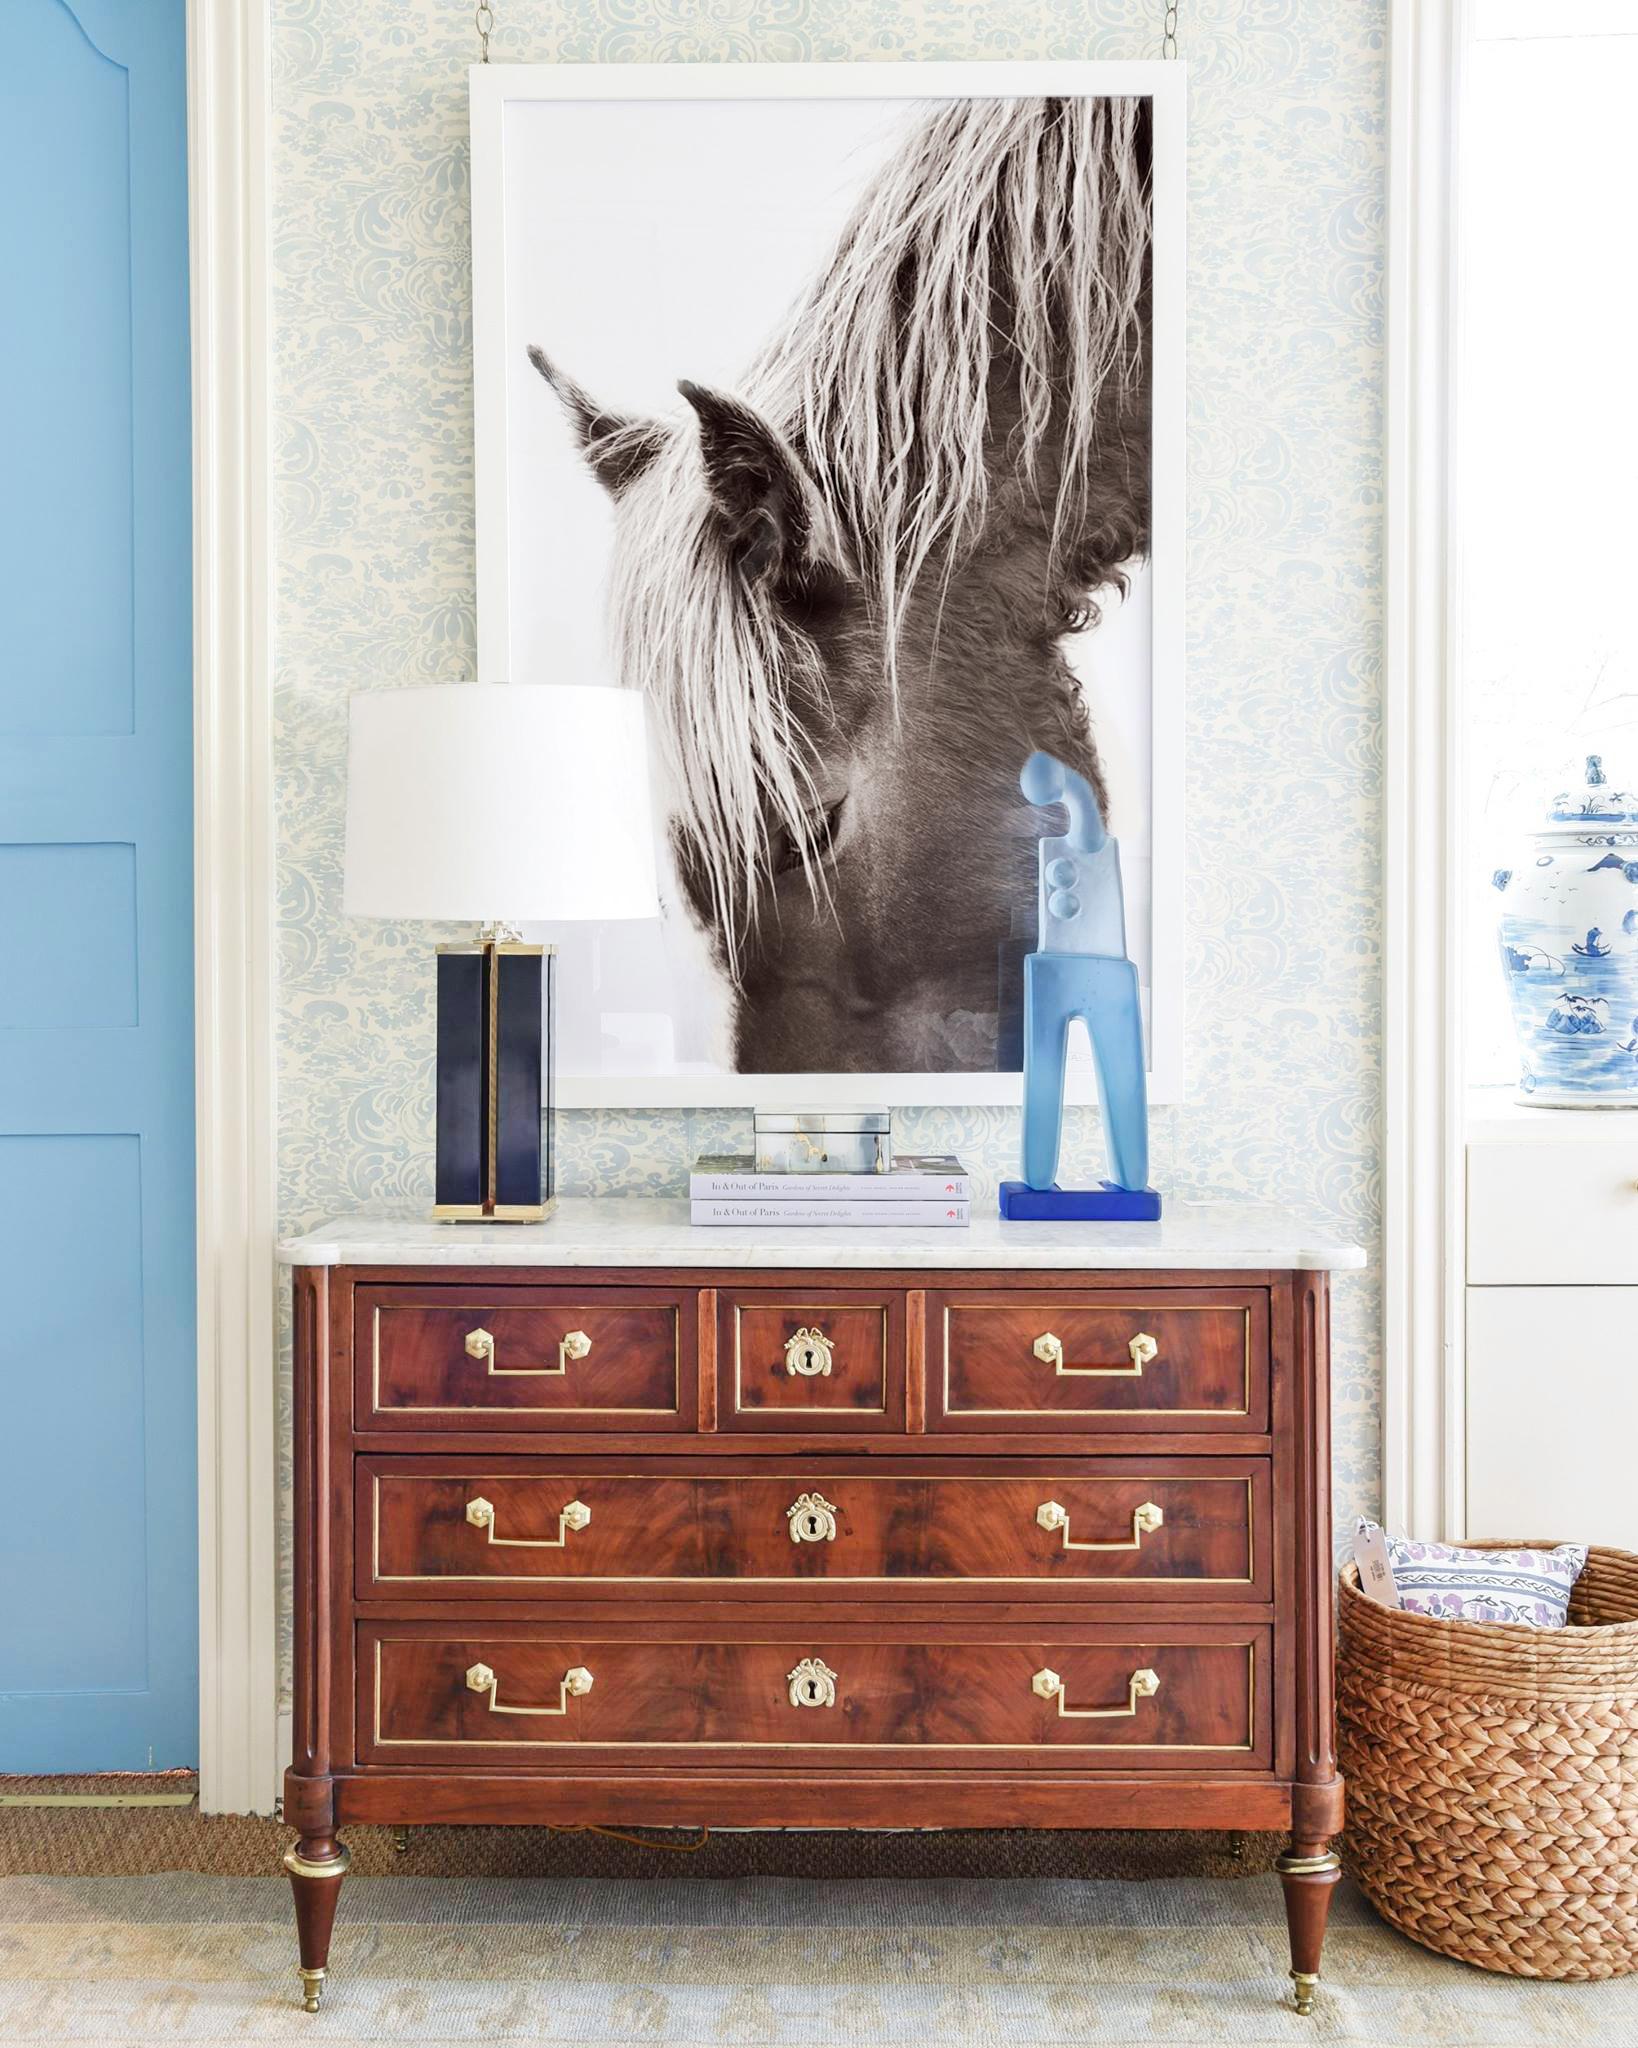 Portrait en gros plan d'un cheval de l'île de Sable, emblématique et méditatif - Photograph de Drew Doggett